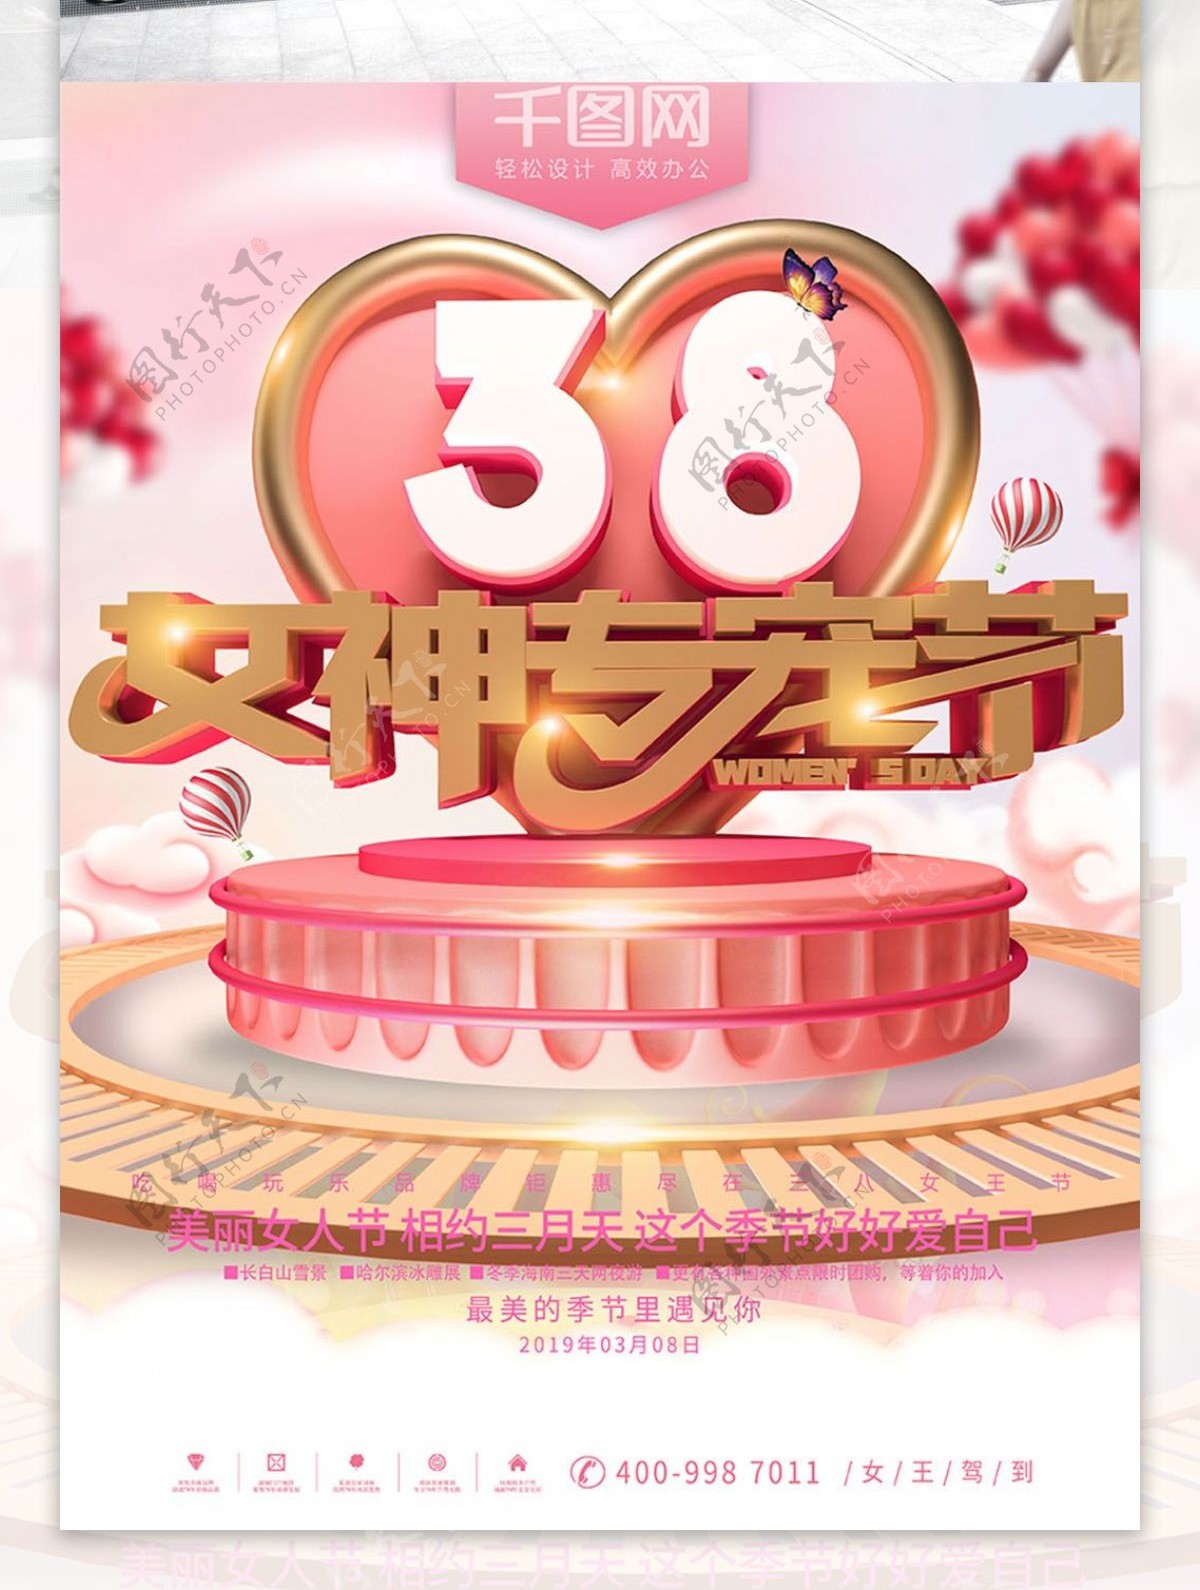 38女神节节日宣传海报